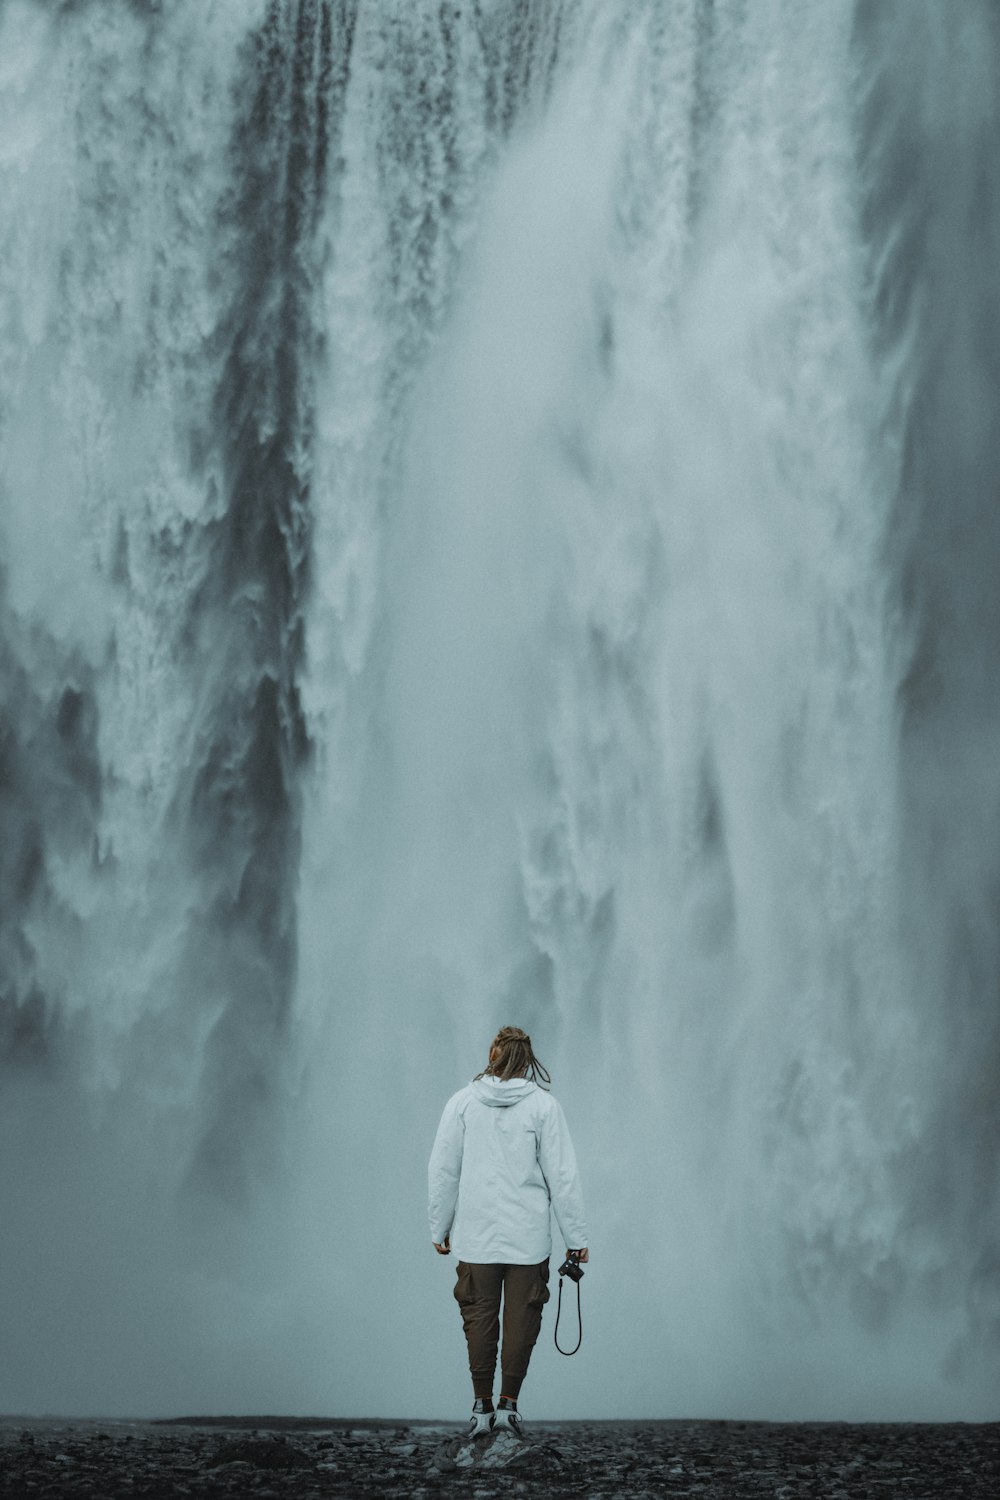 eine Person, die vor einem großen Wasserfall steht